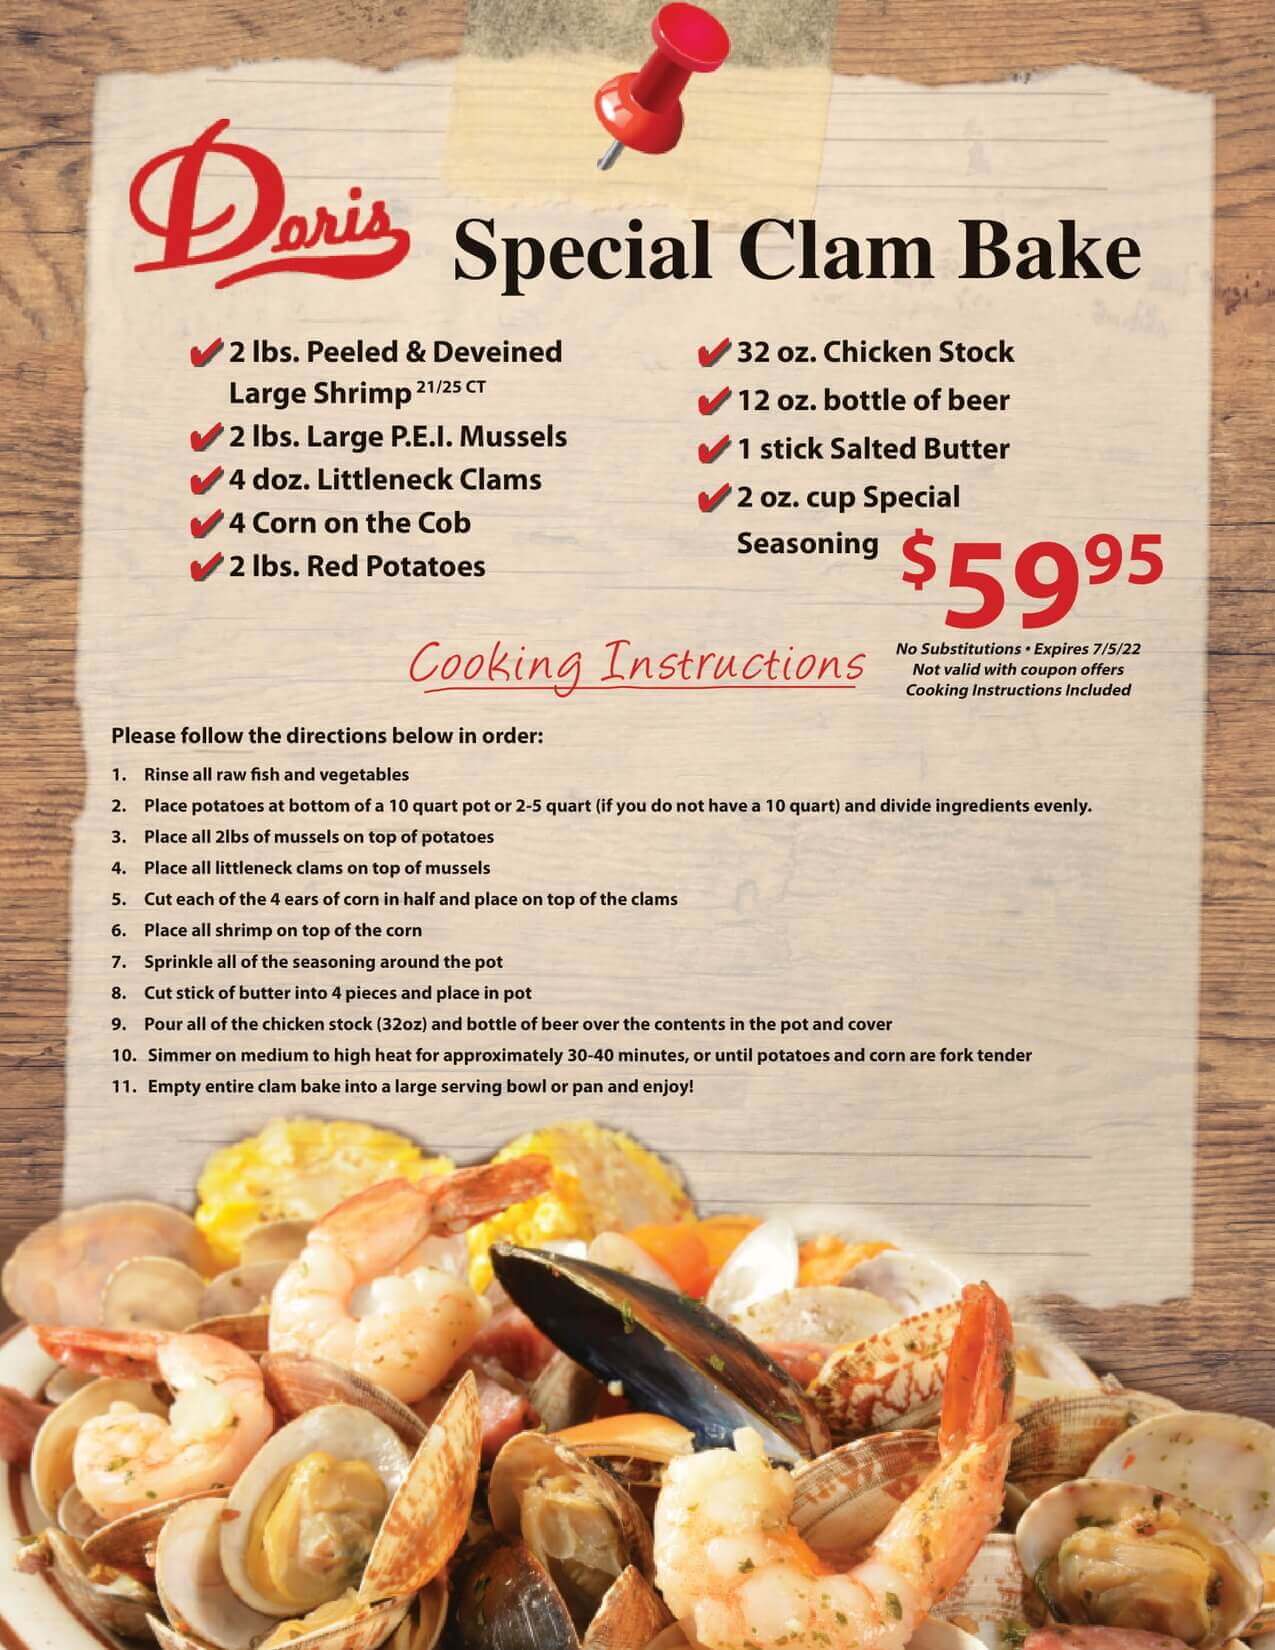 Doris Special Clam Bake